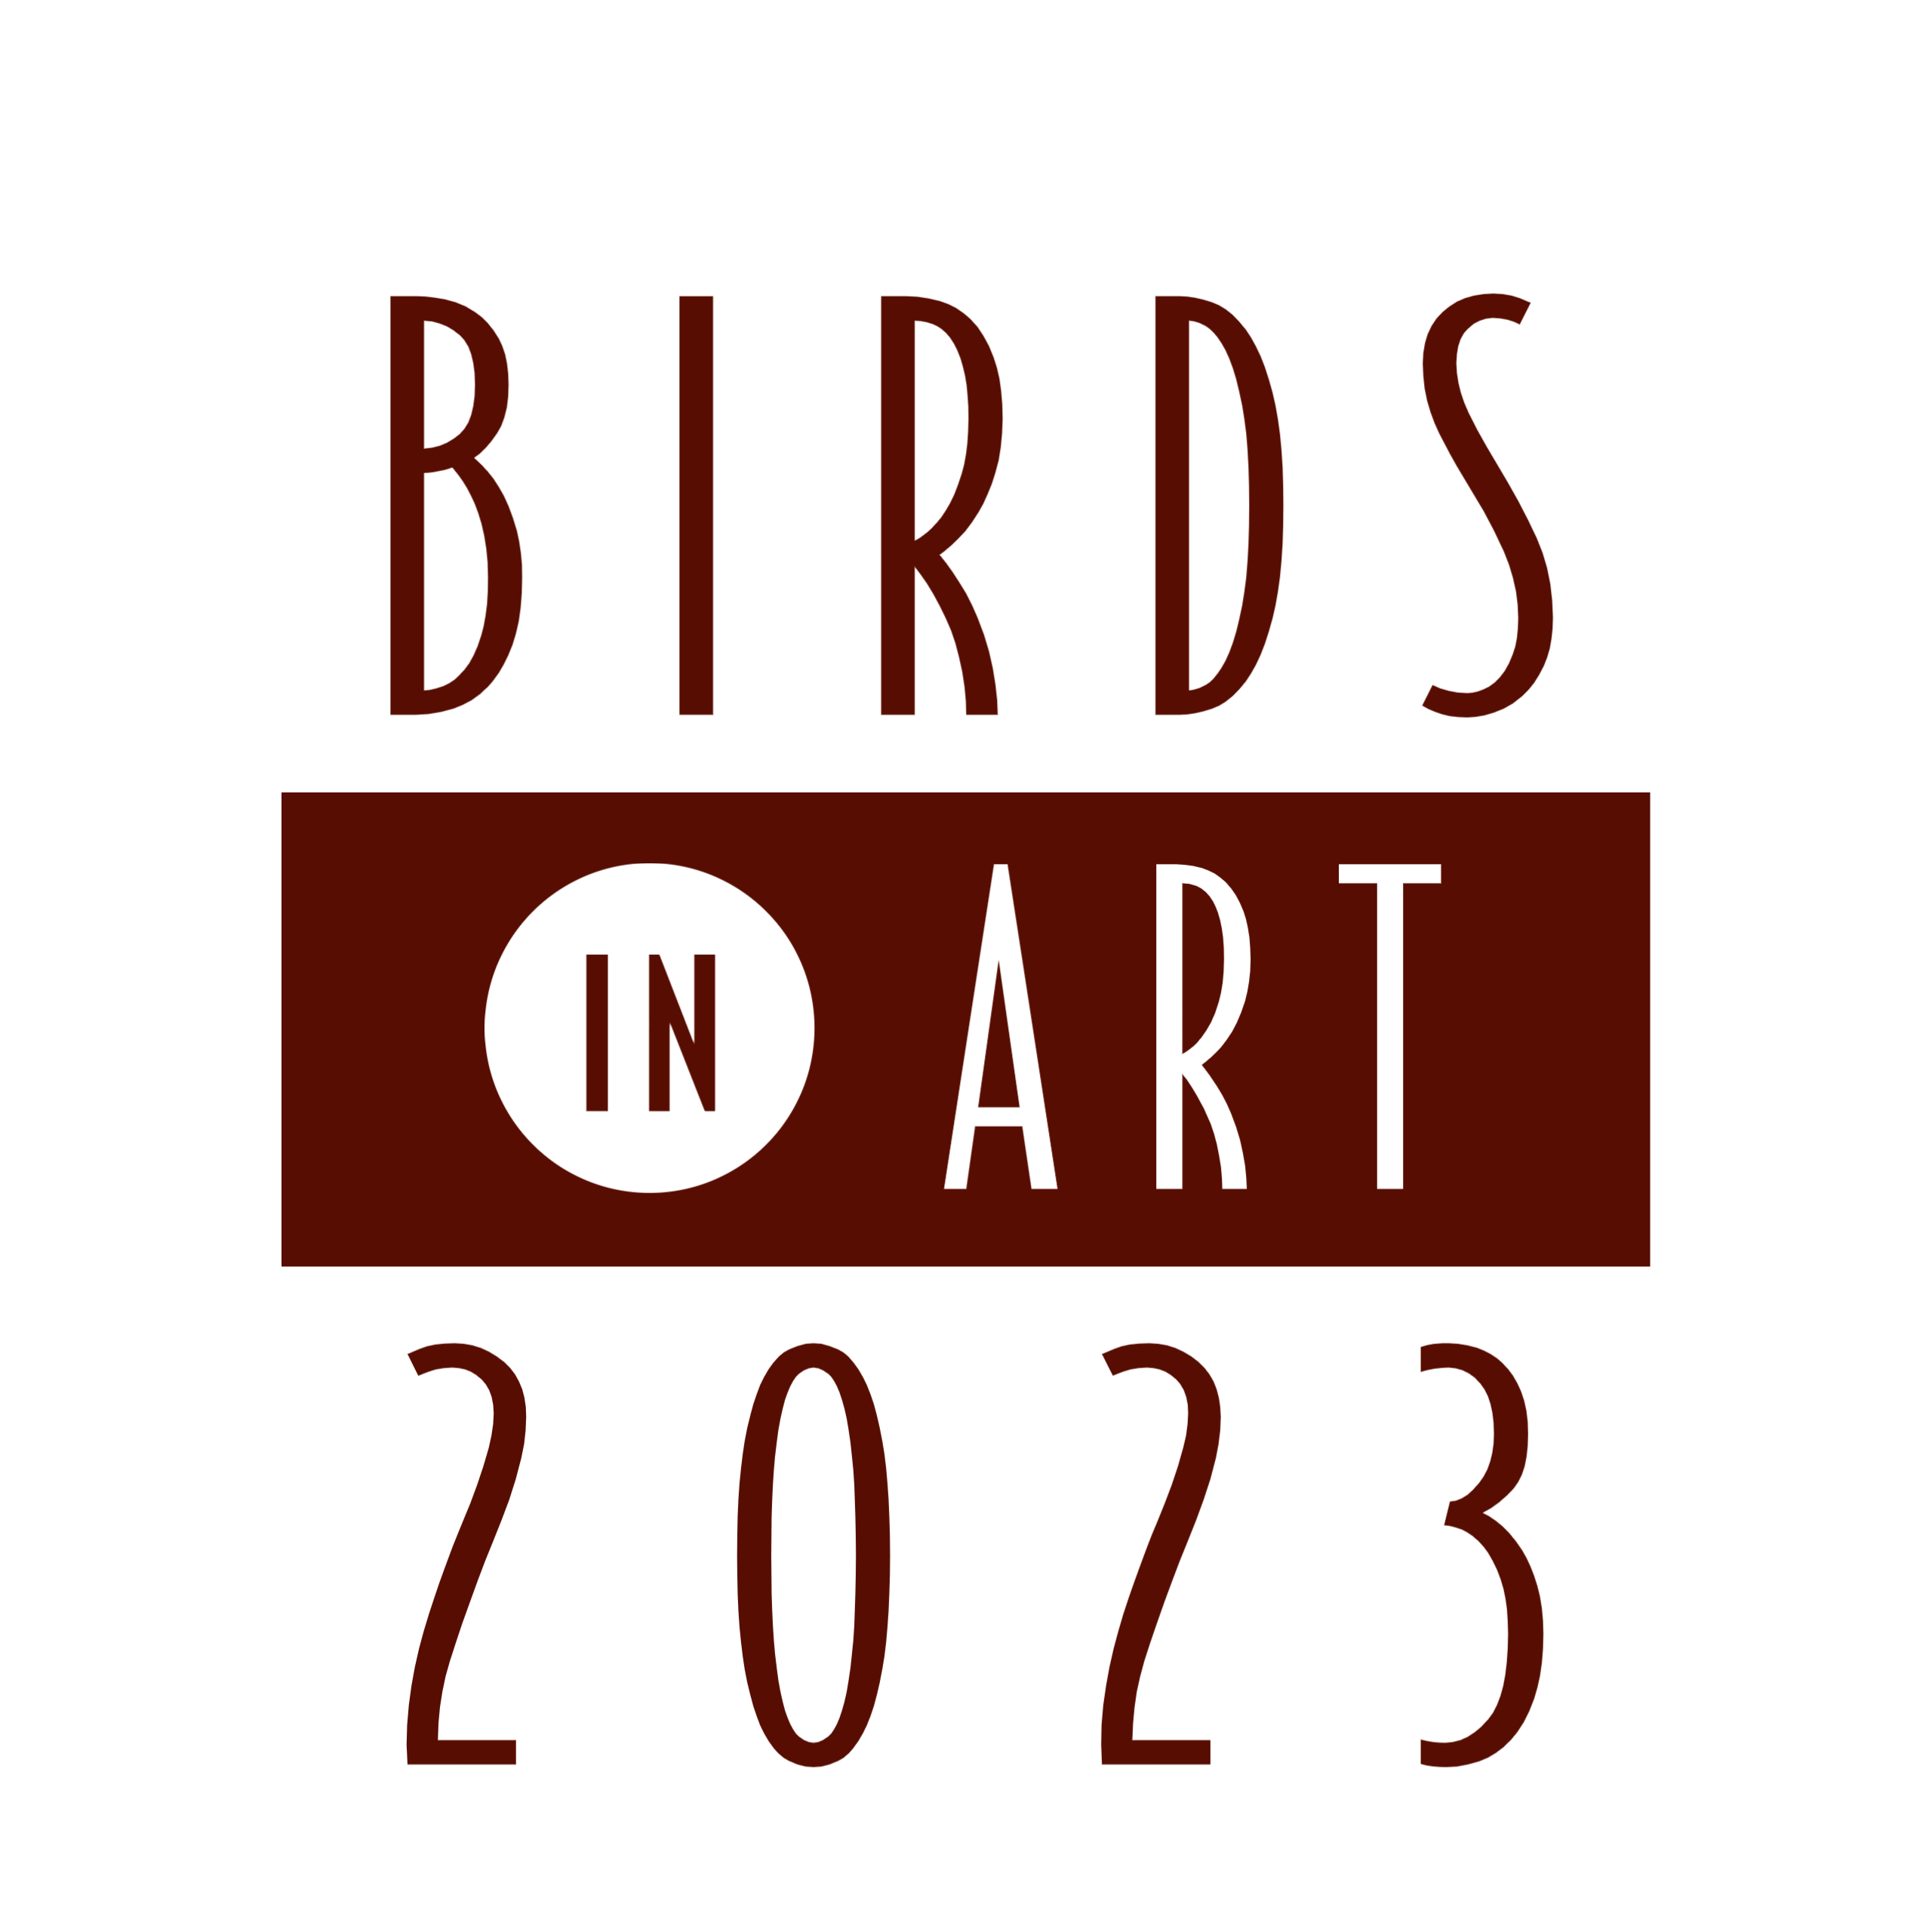 16+ Birds In Art Wausau Wi